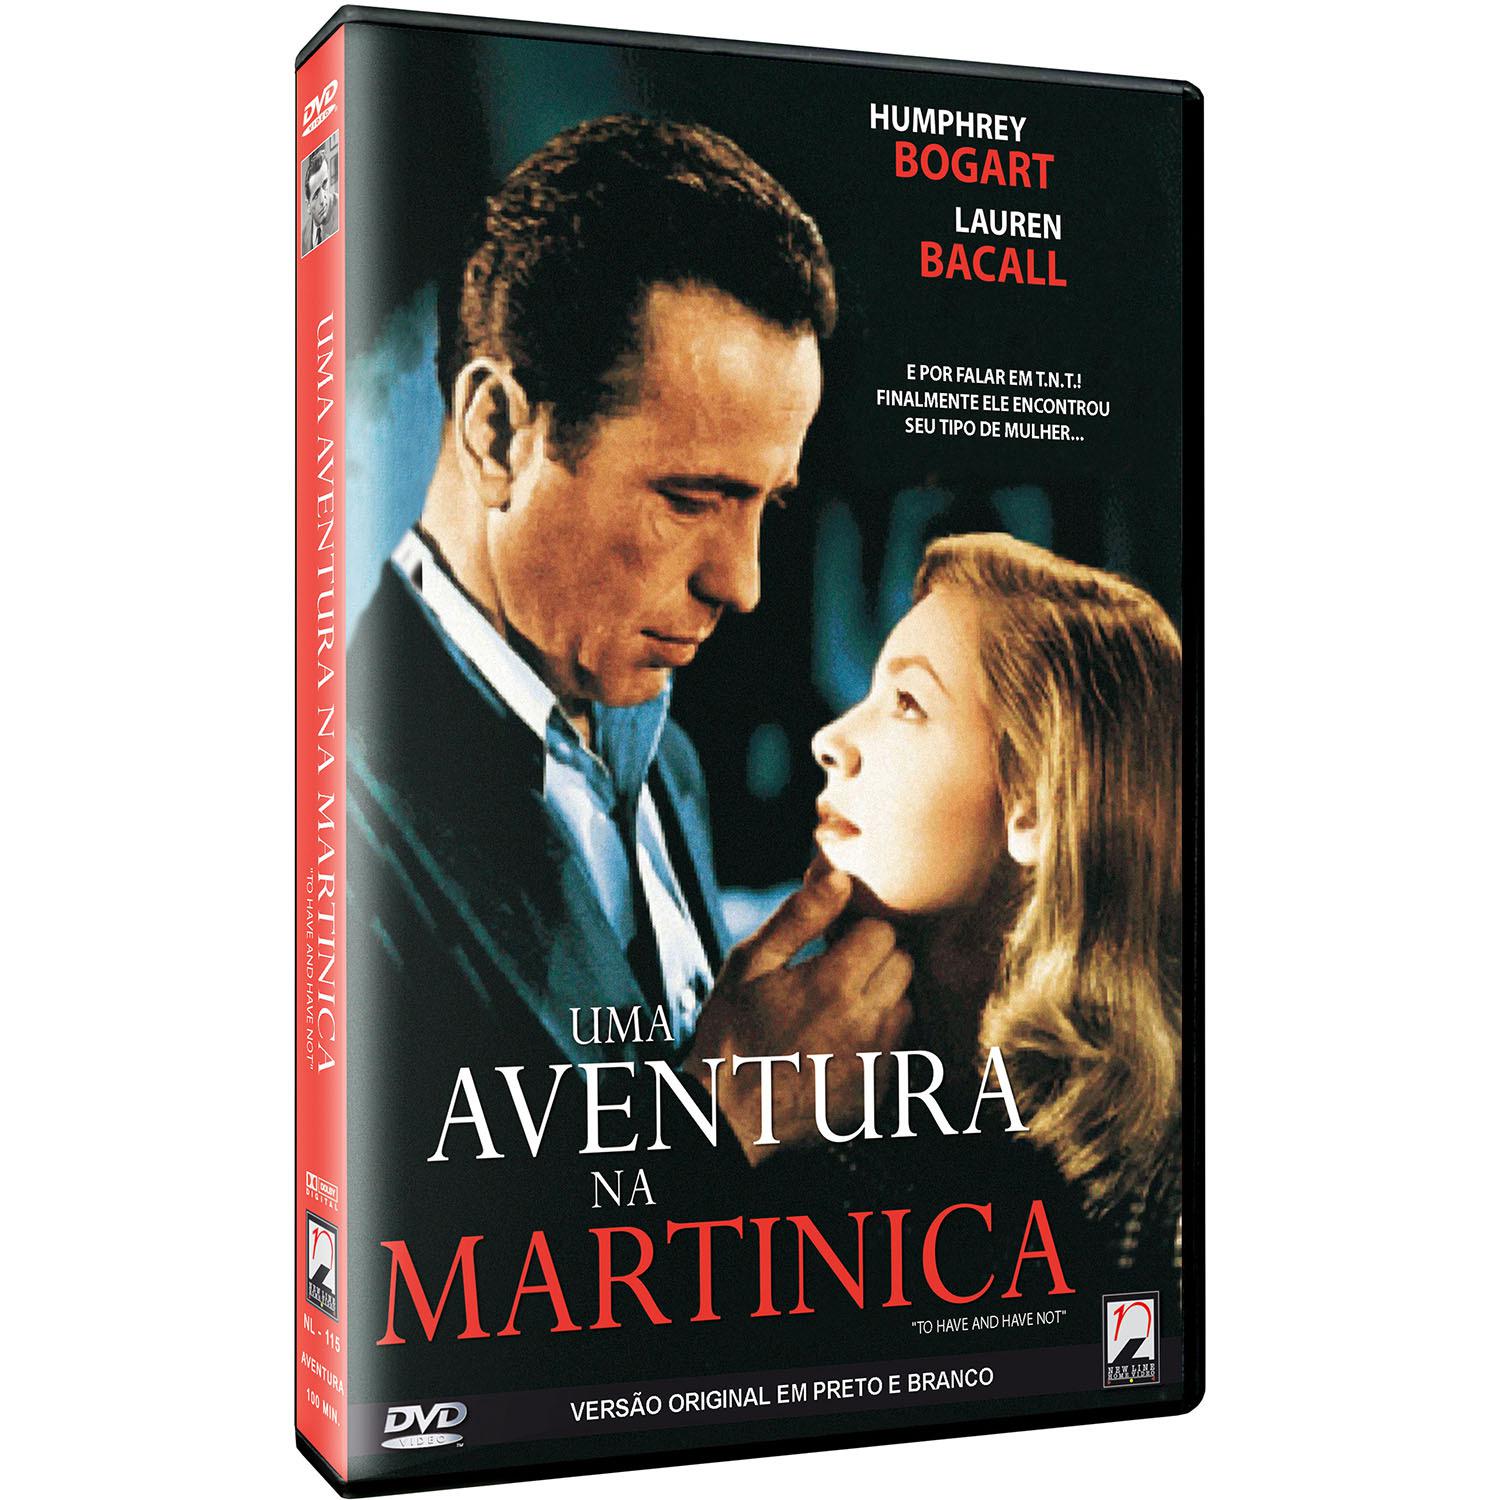 DVD Uma Aventura na Martinica é bom? Vale a pena?